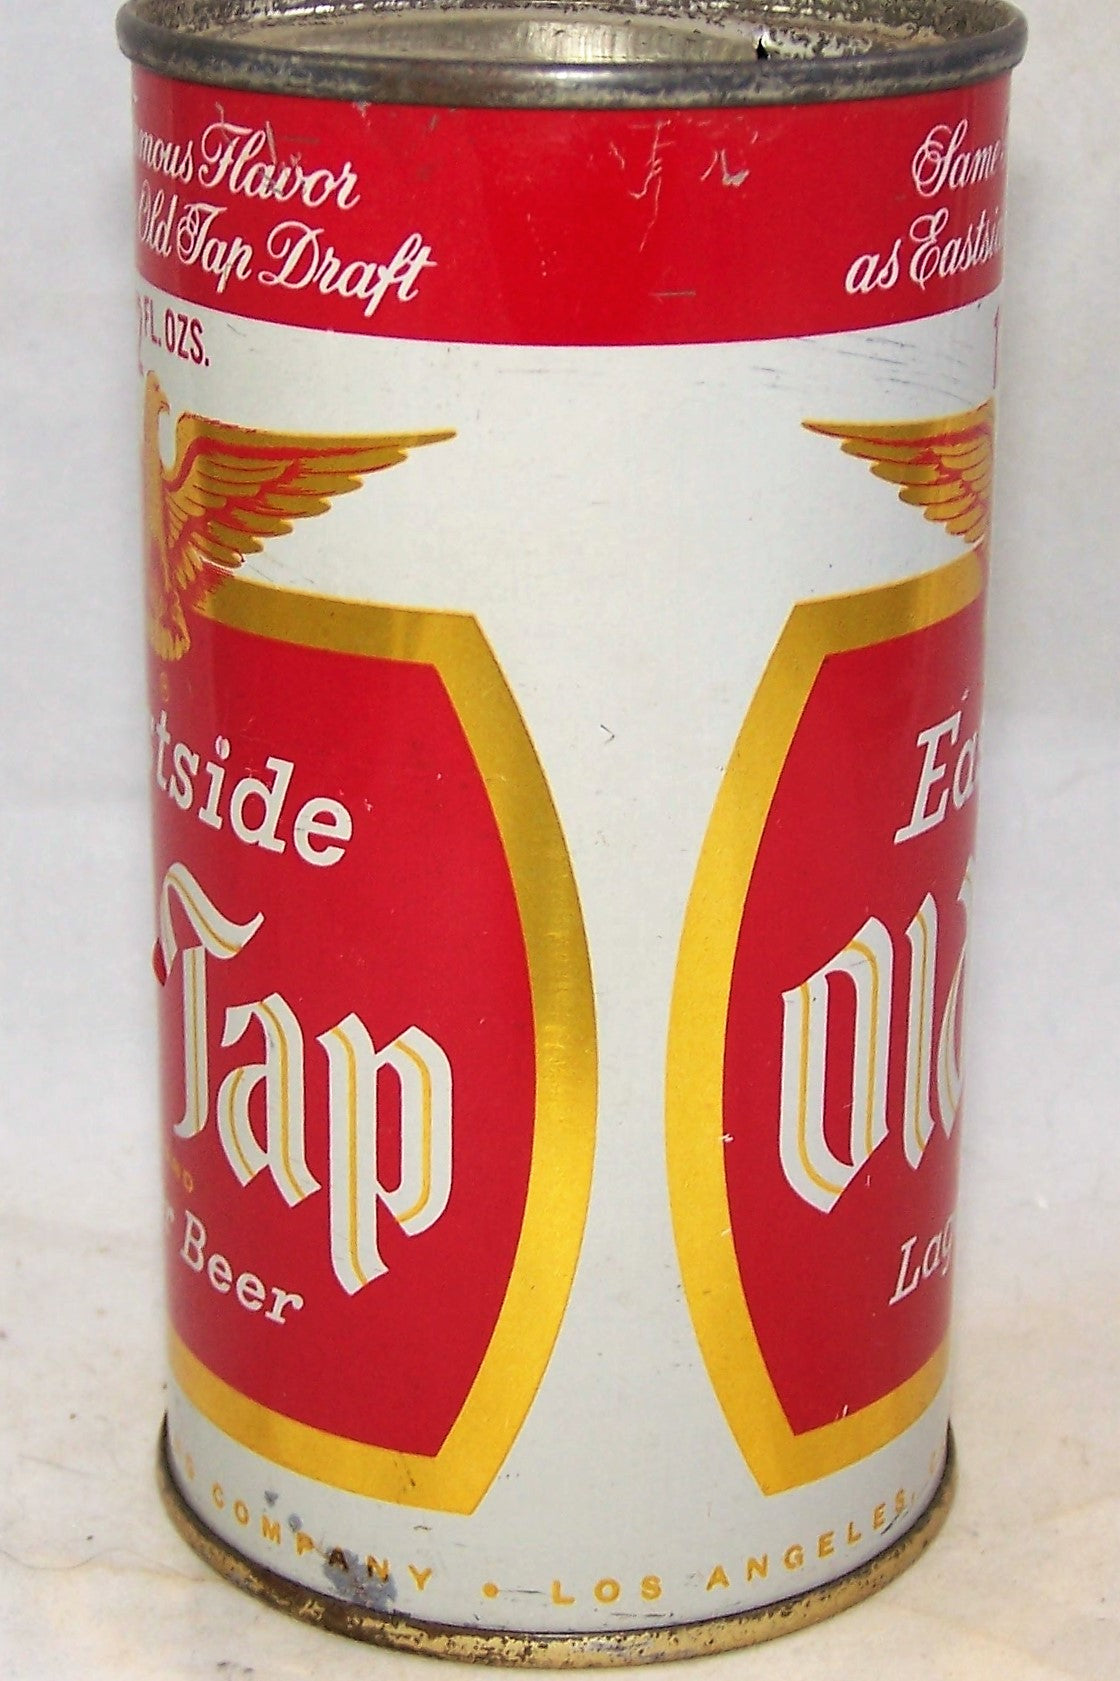 Eastside Old Tap Lager Beer, USBC 58-20, Grade 1